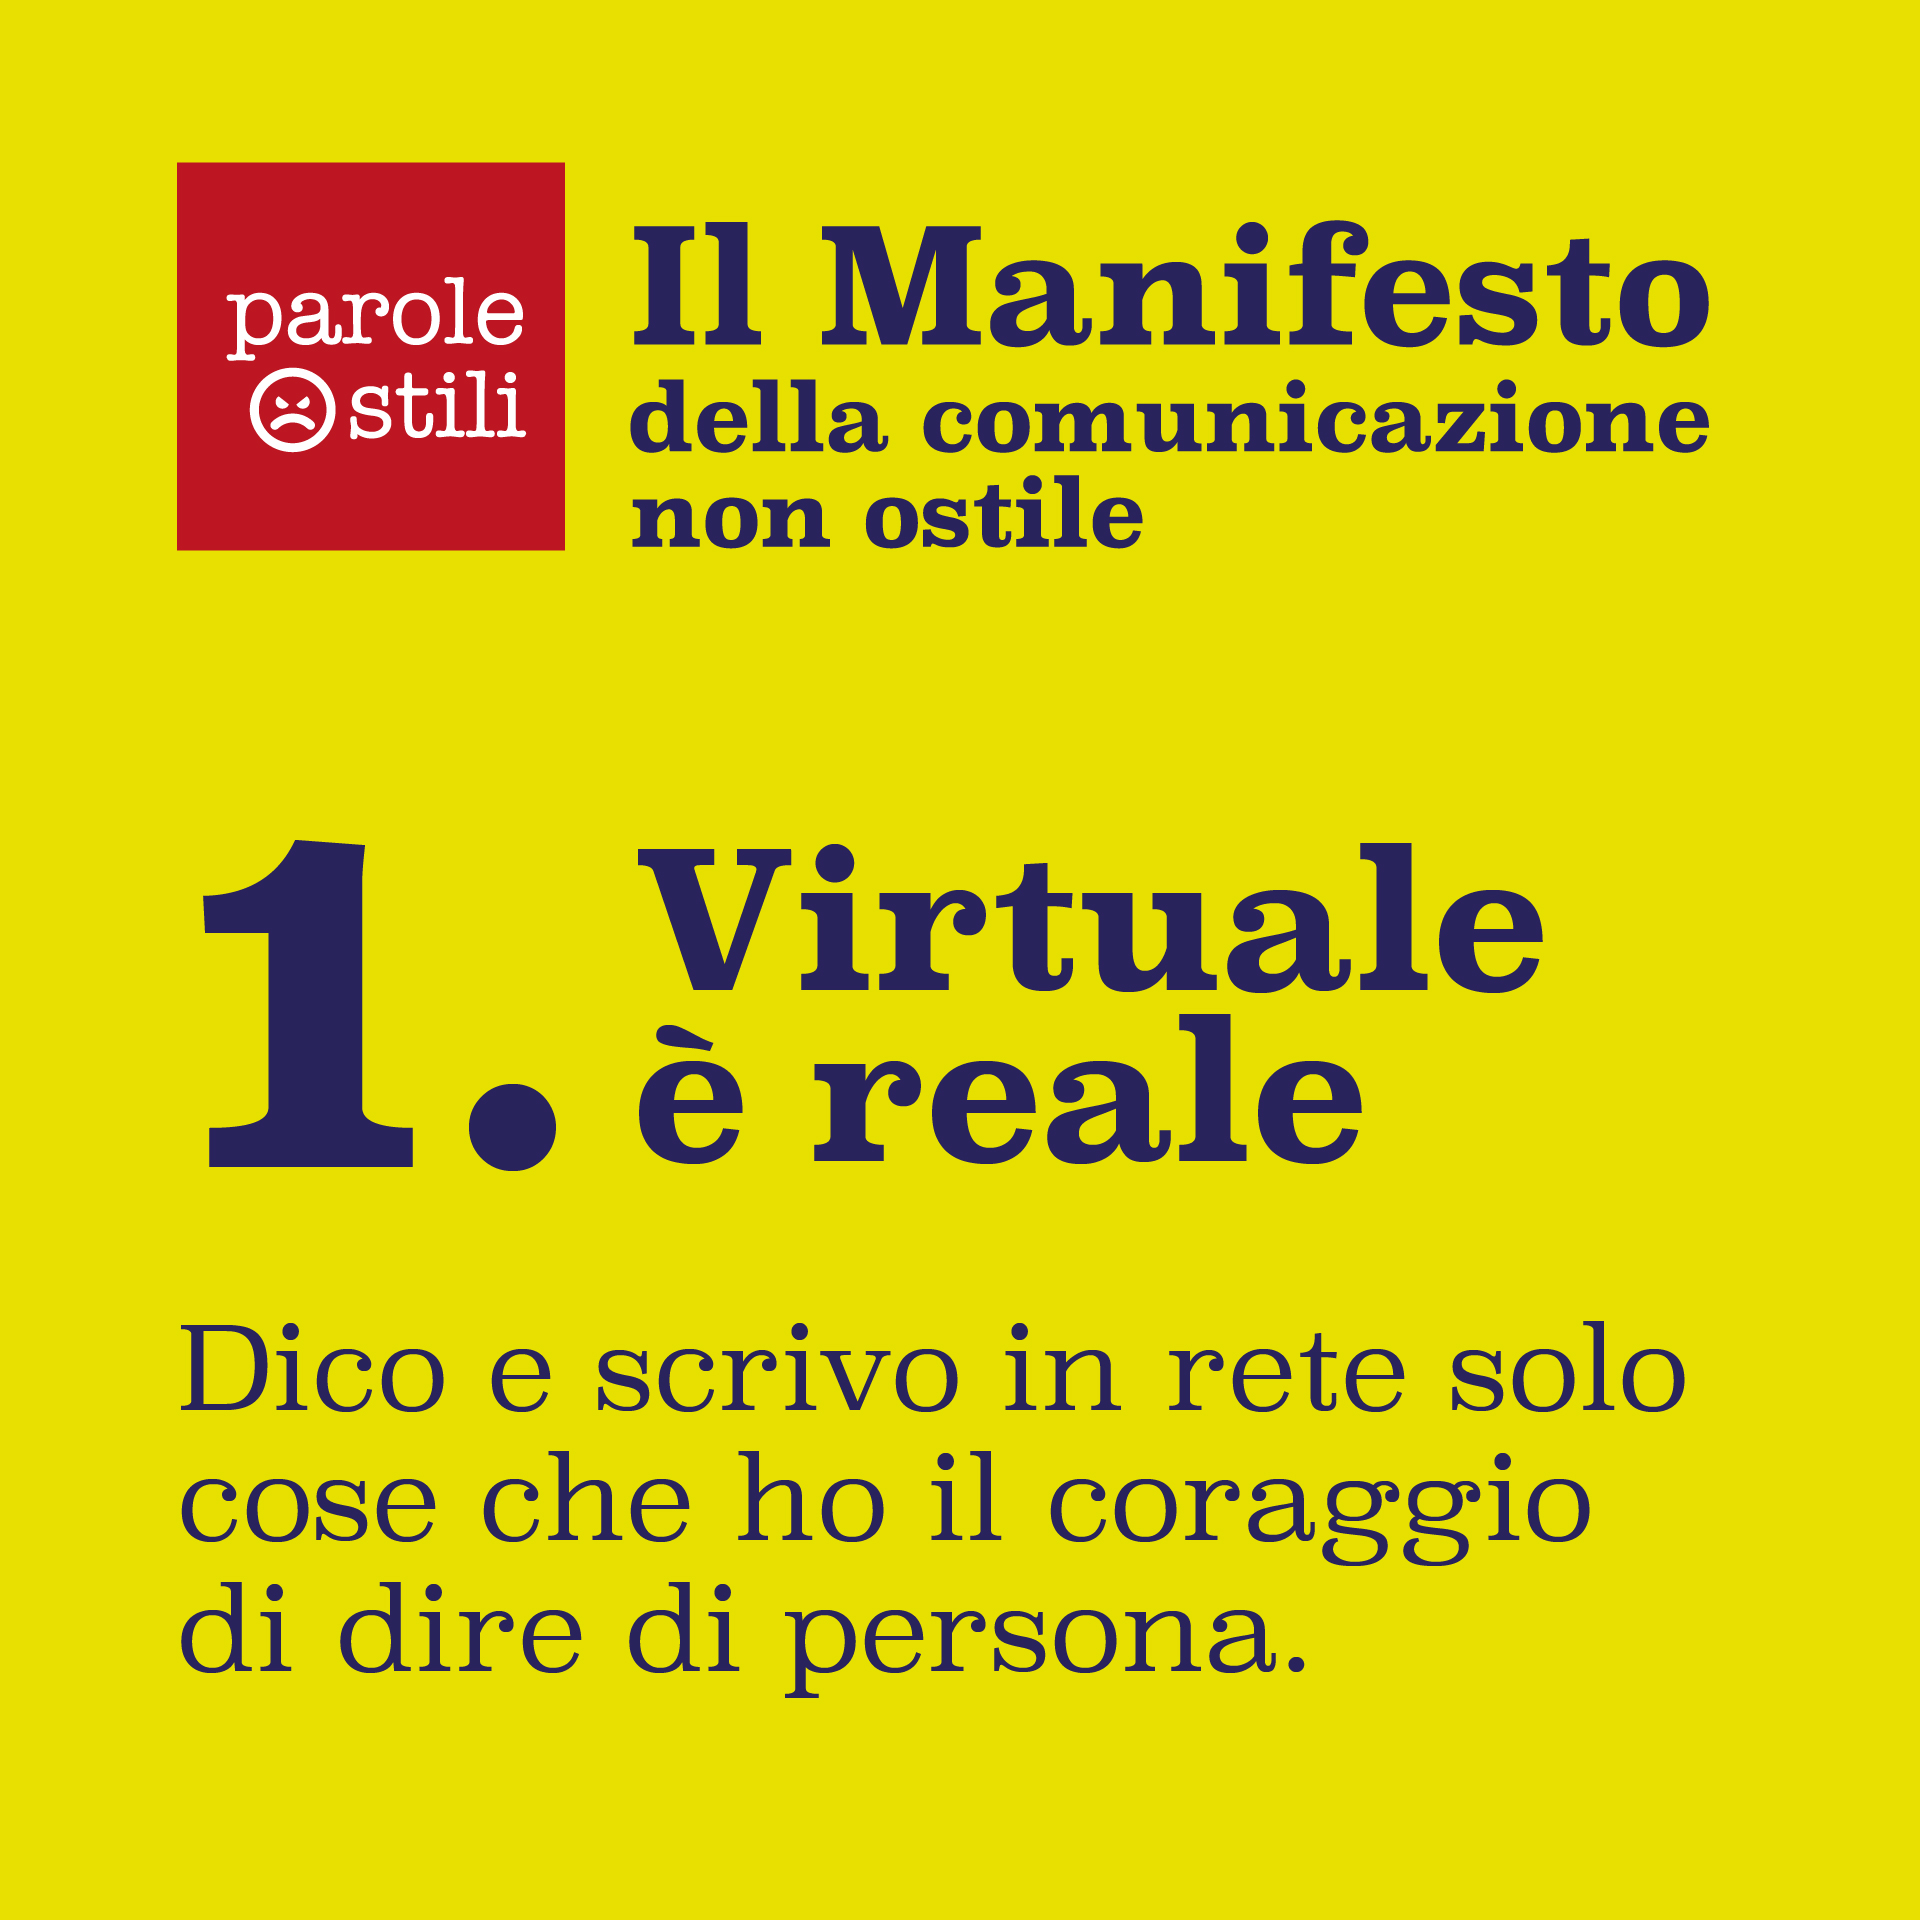 Virtuale è reale. Manifesto della comunicazione non ostile.